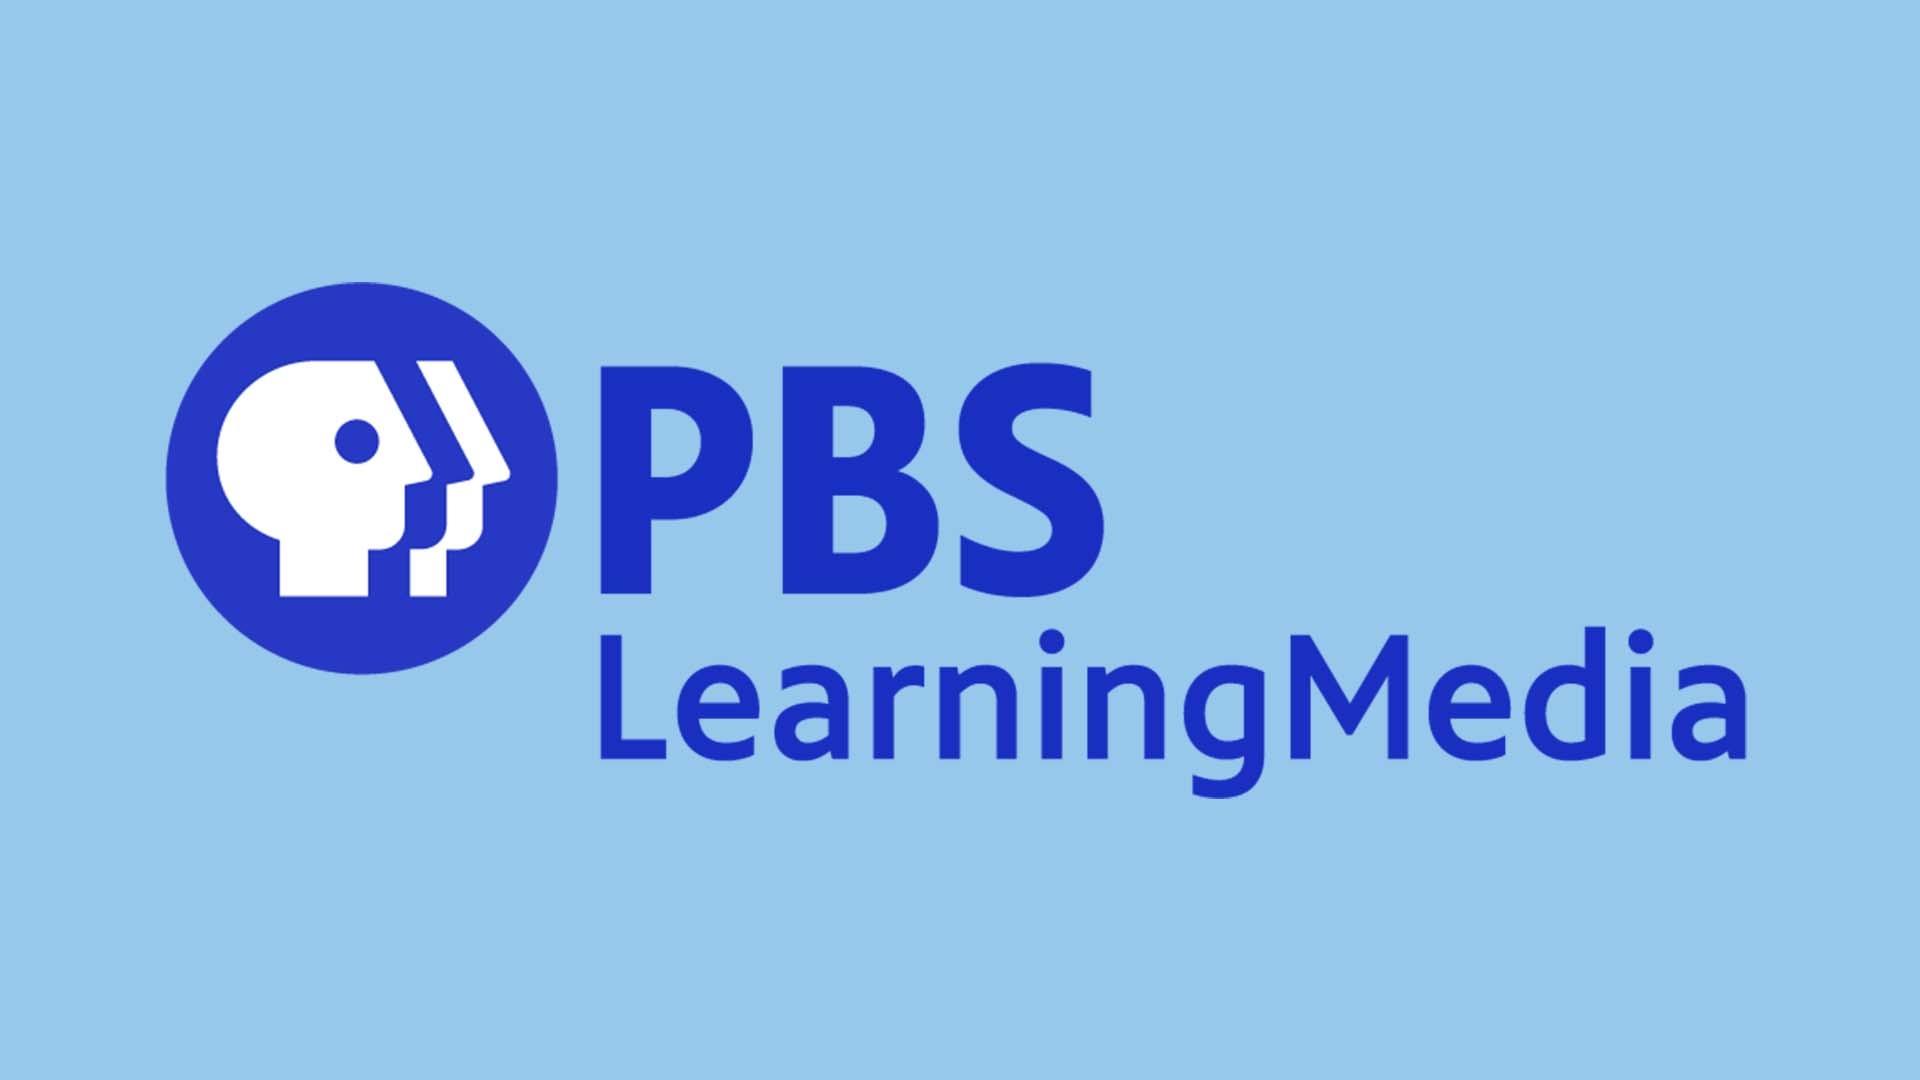 PBS learning media logo in blue